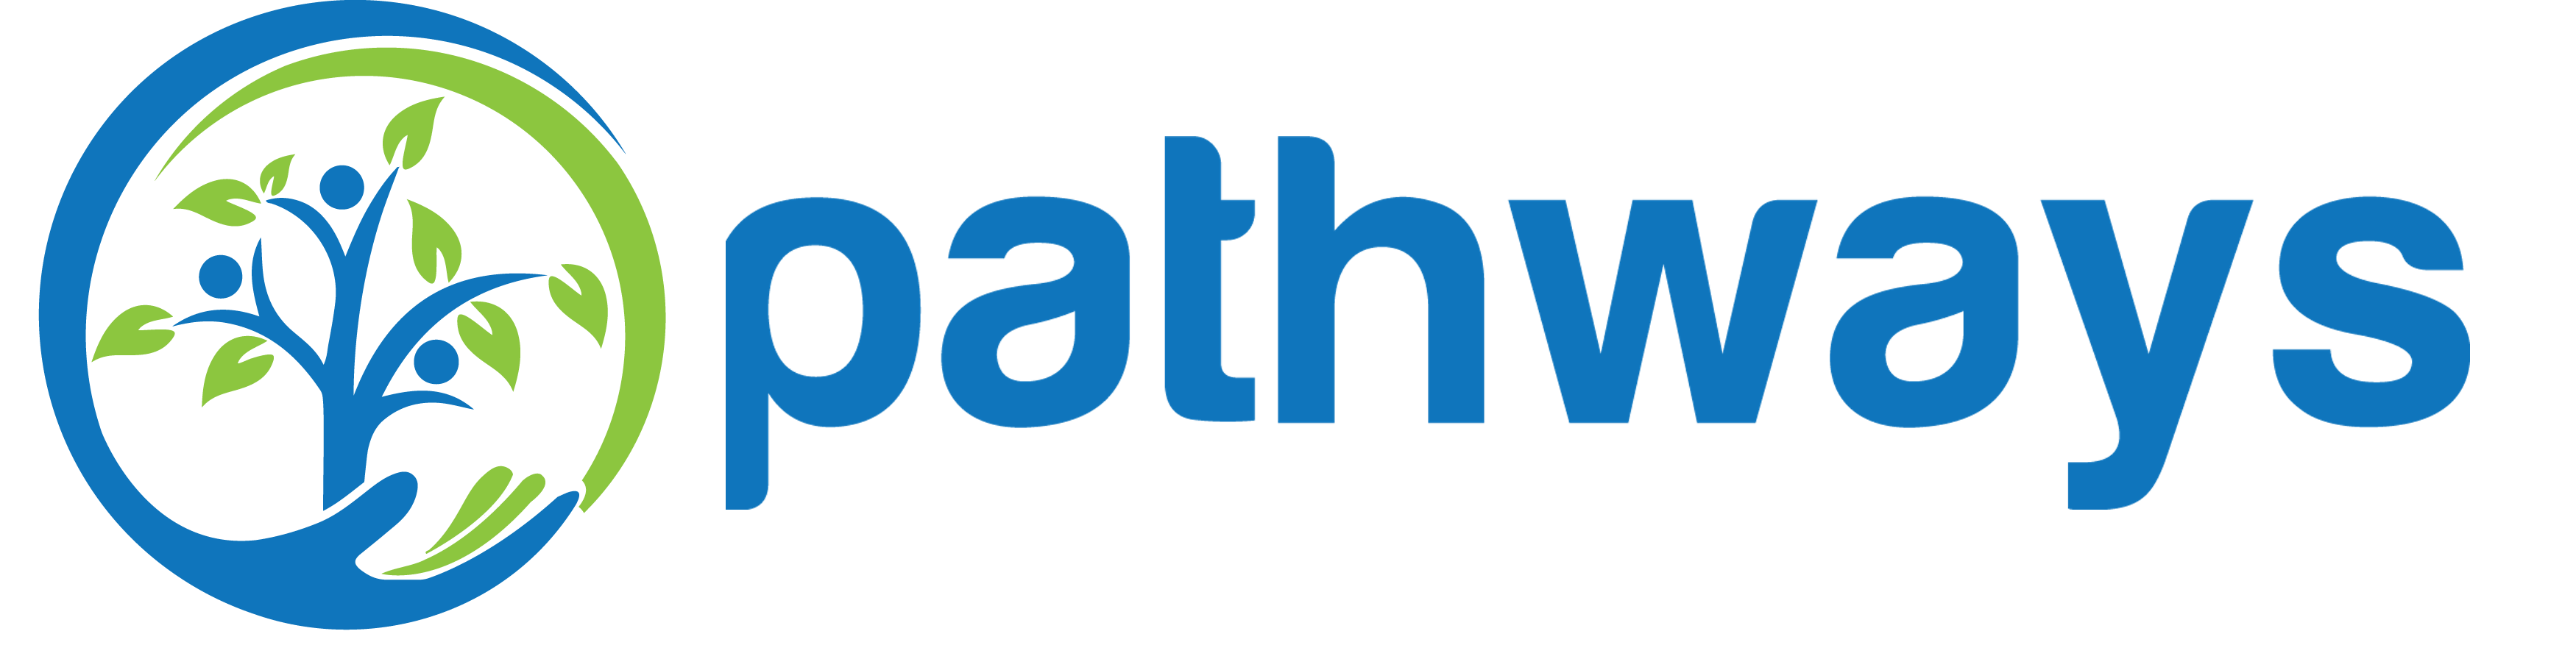 Pathways-Logo-H.png